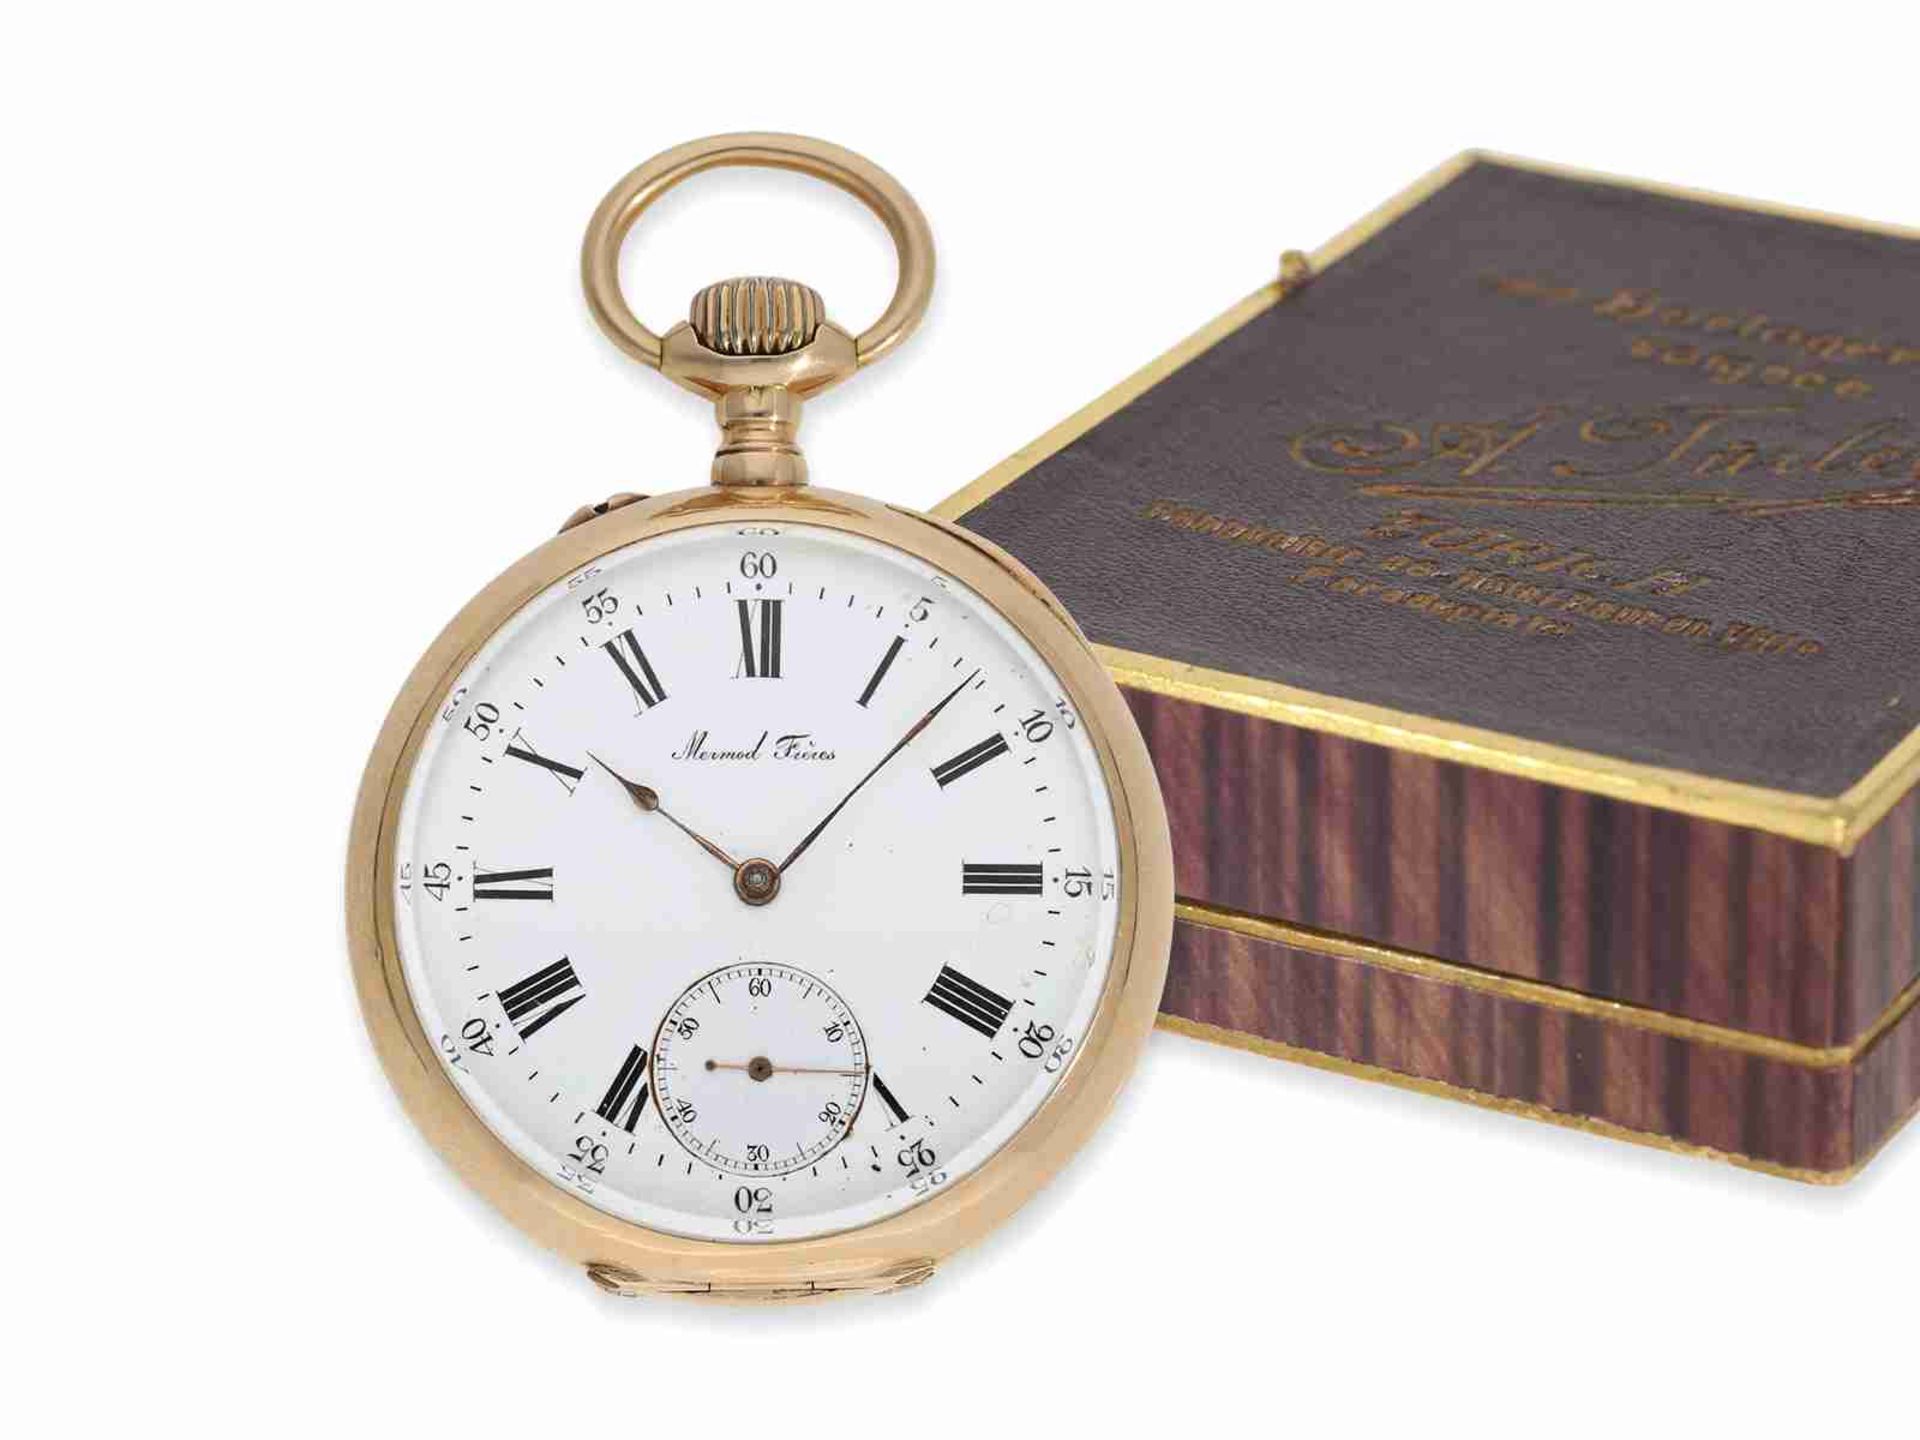 Taschenuhr: hochfeines rotgoldenes Ankerchronometer von Mermod Freres, verkauft durch Türler in Züri